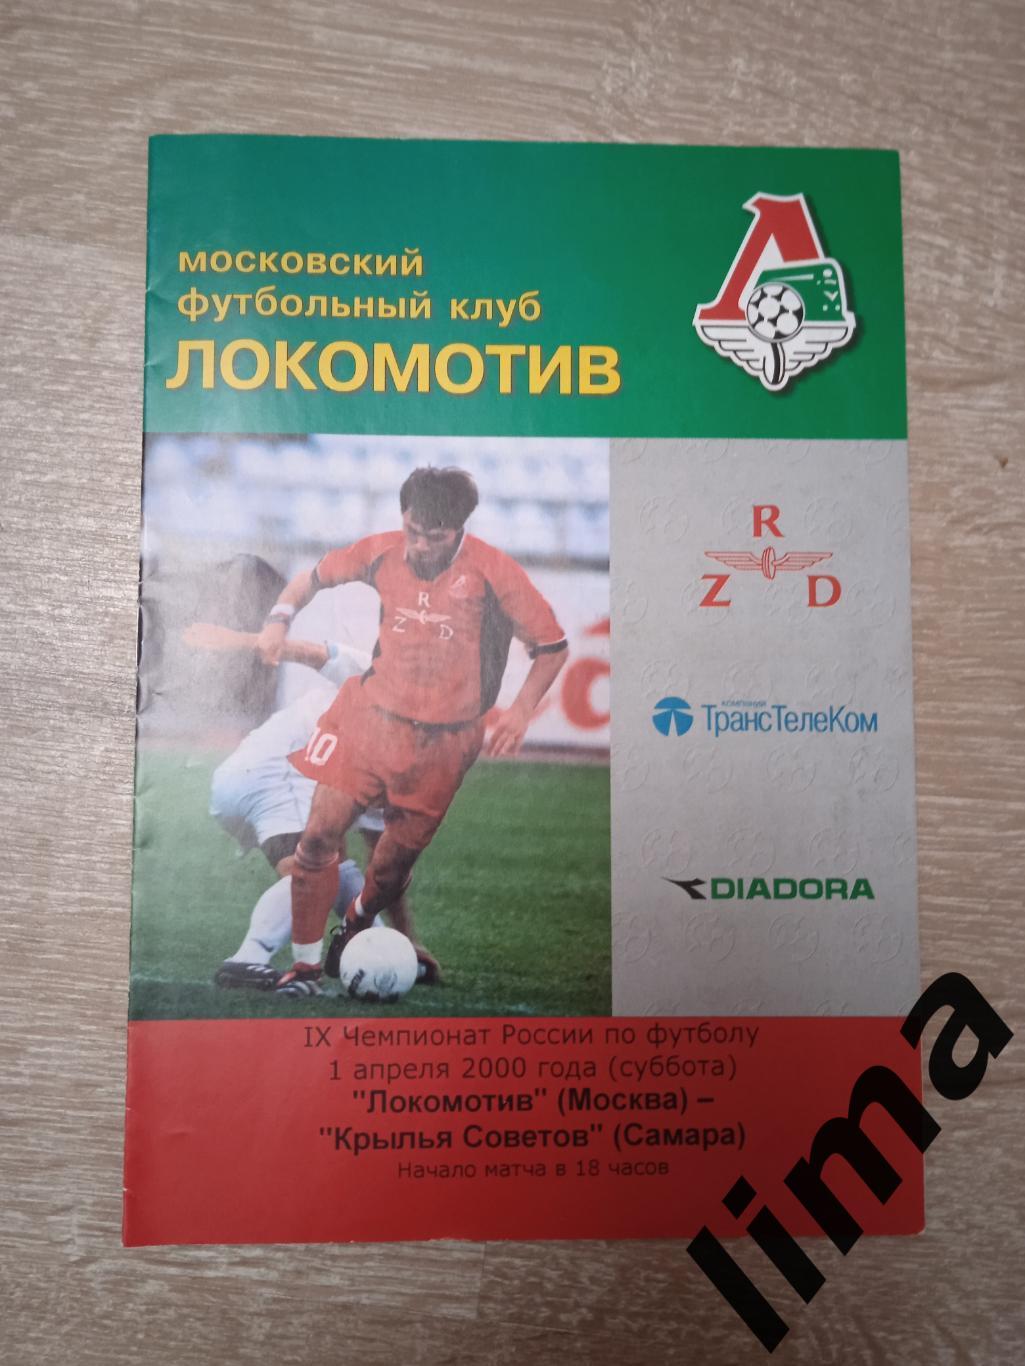 Локомотив Москва - Крылья советов Самара 2000 г